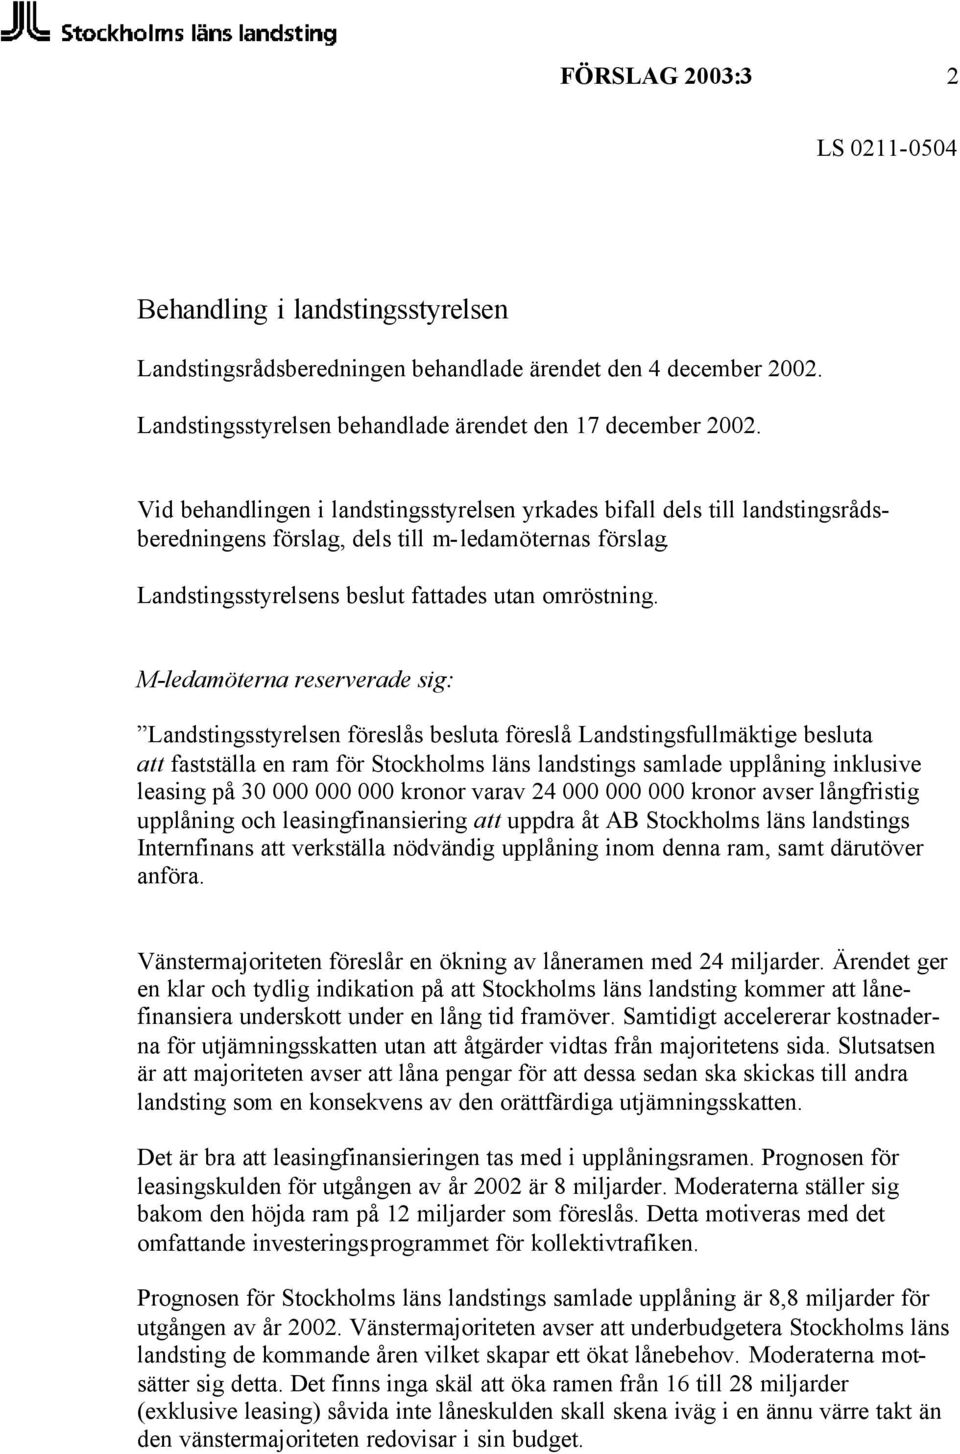 M-ledamöterna reserverade sig: Landstingsstyrelsen föreslås besluta föreslå Landstingsfullmäktige besluta att fastställa en ram för Stockholms läns landstings samlade upplåning inklusive leasing på